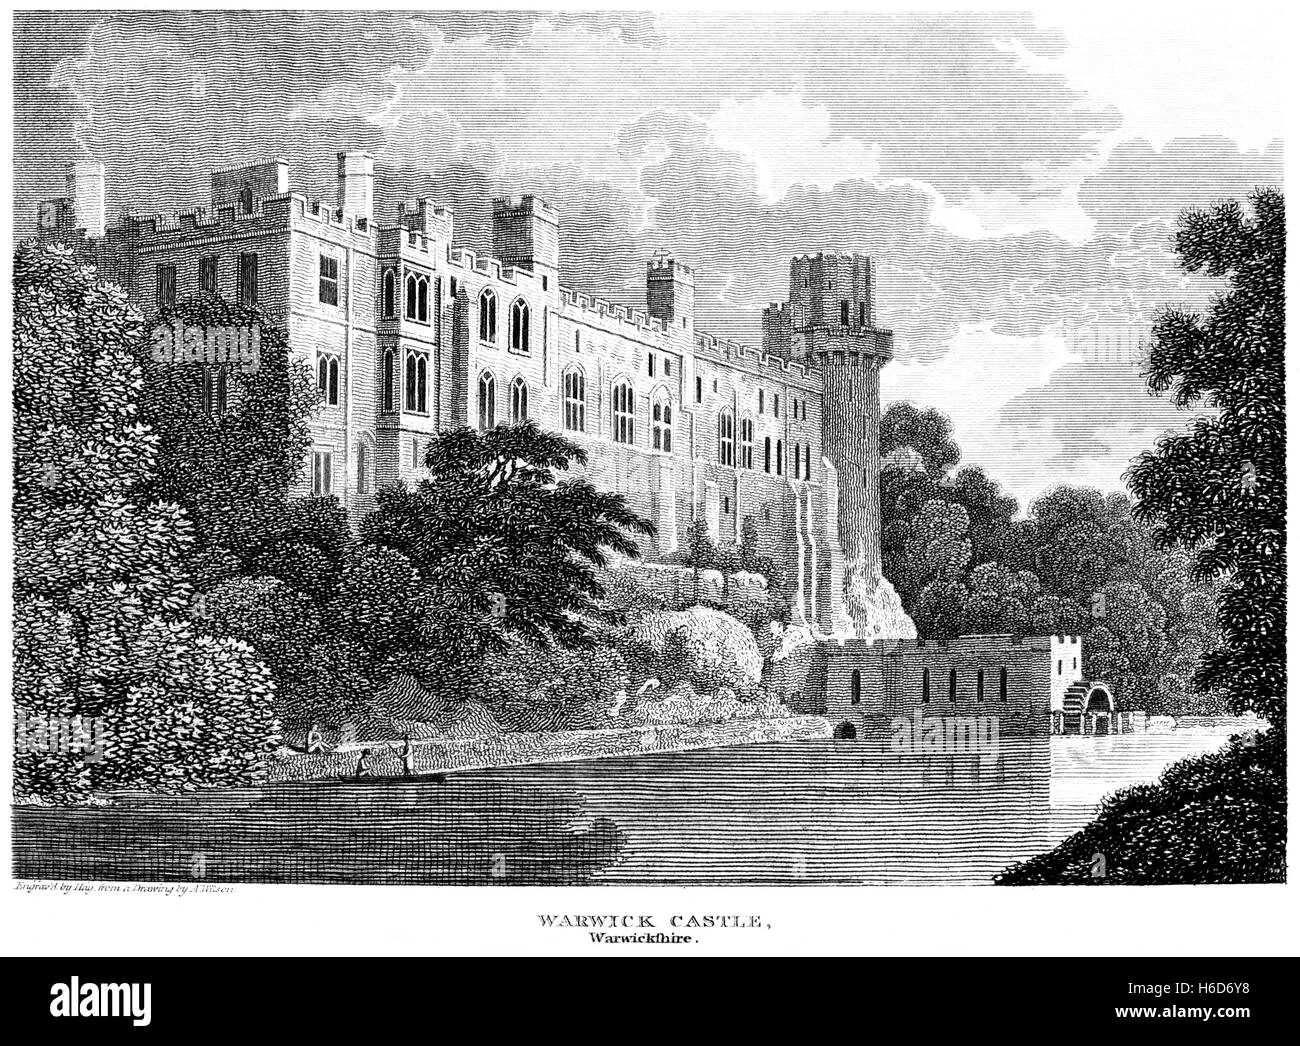 Eine Gravur des Warwick Castle, gescannt mit hoher Auflösung aus einem Buch, gedruckt im Jahre 1812 Warwickshire. Kostenlos copyright geglaubt. Stockfoto